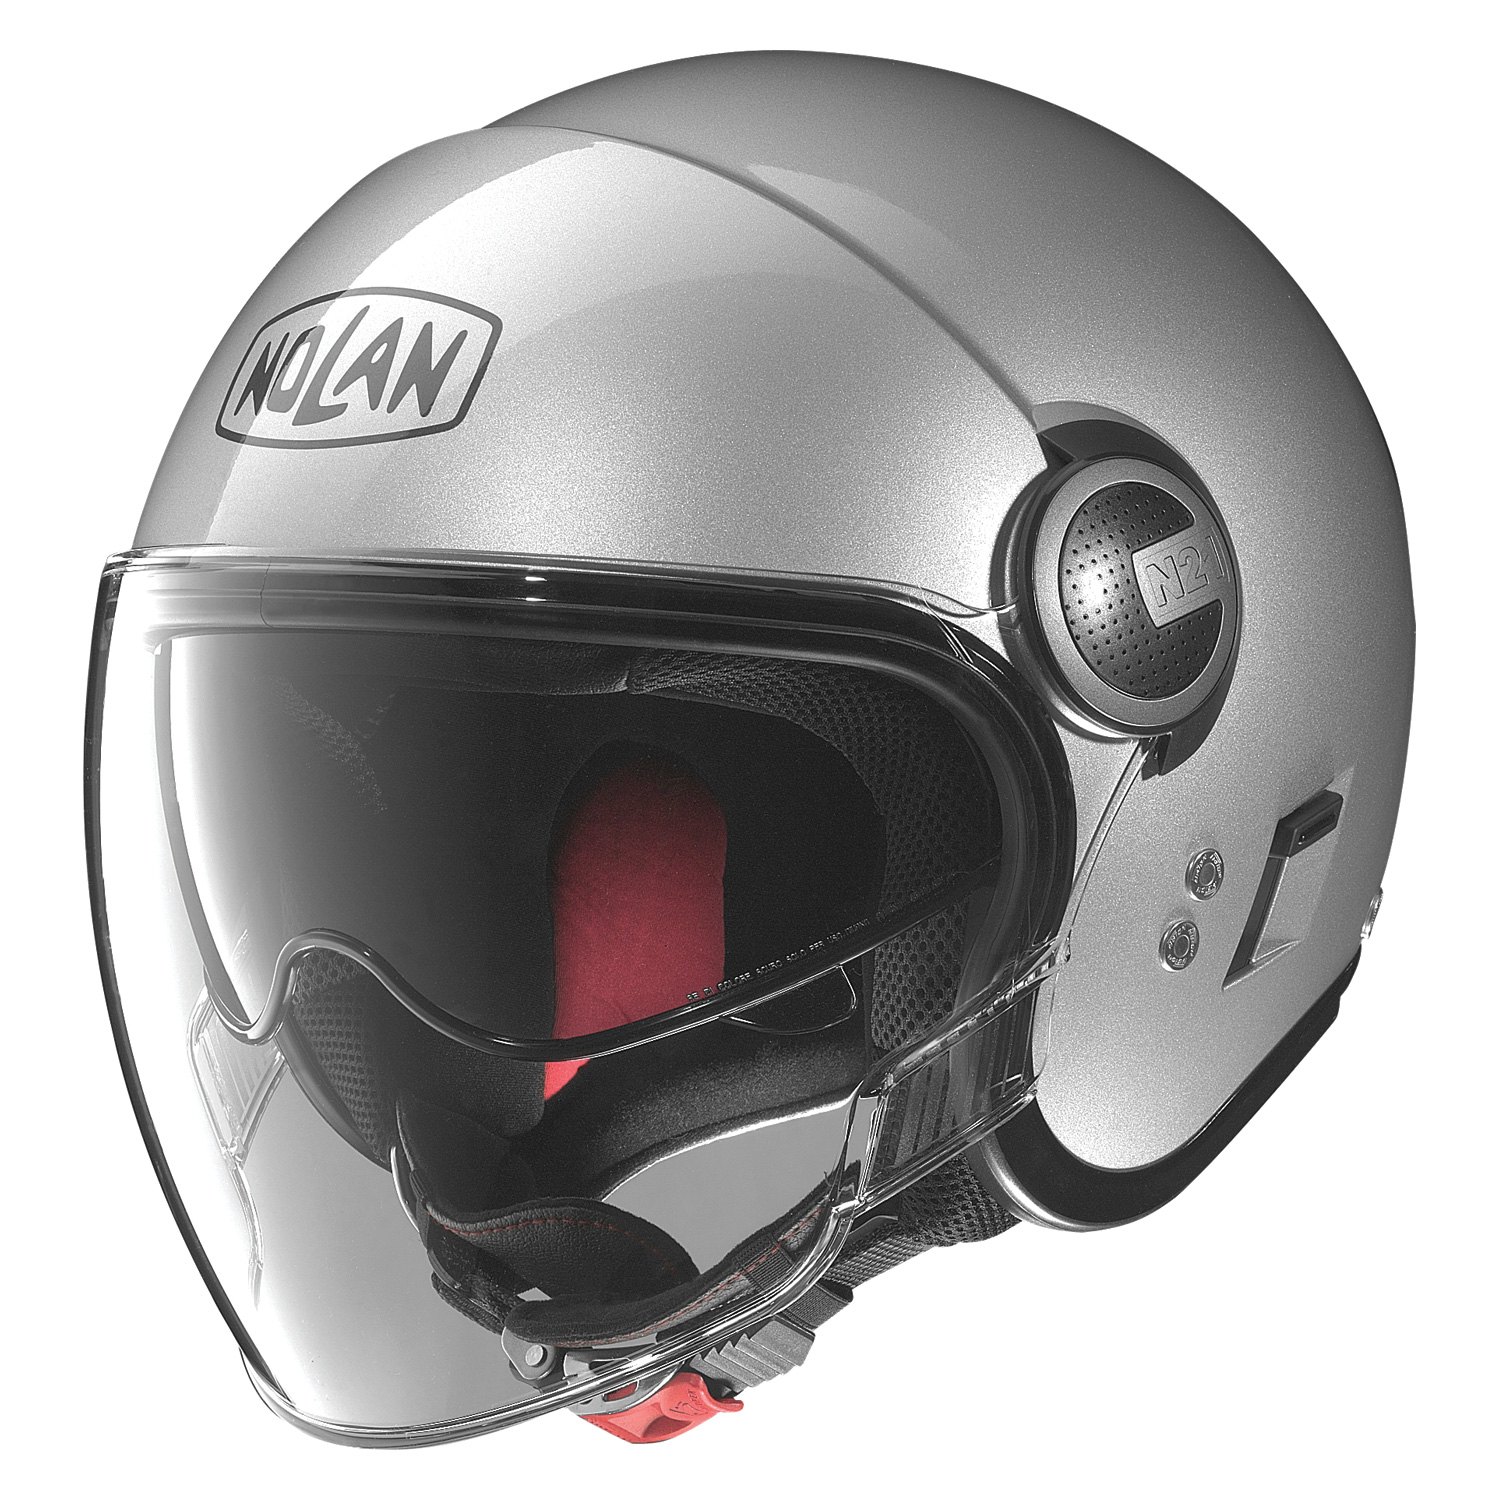 Nolan Helmets® N21 Visor Open Face Helmet